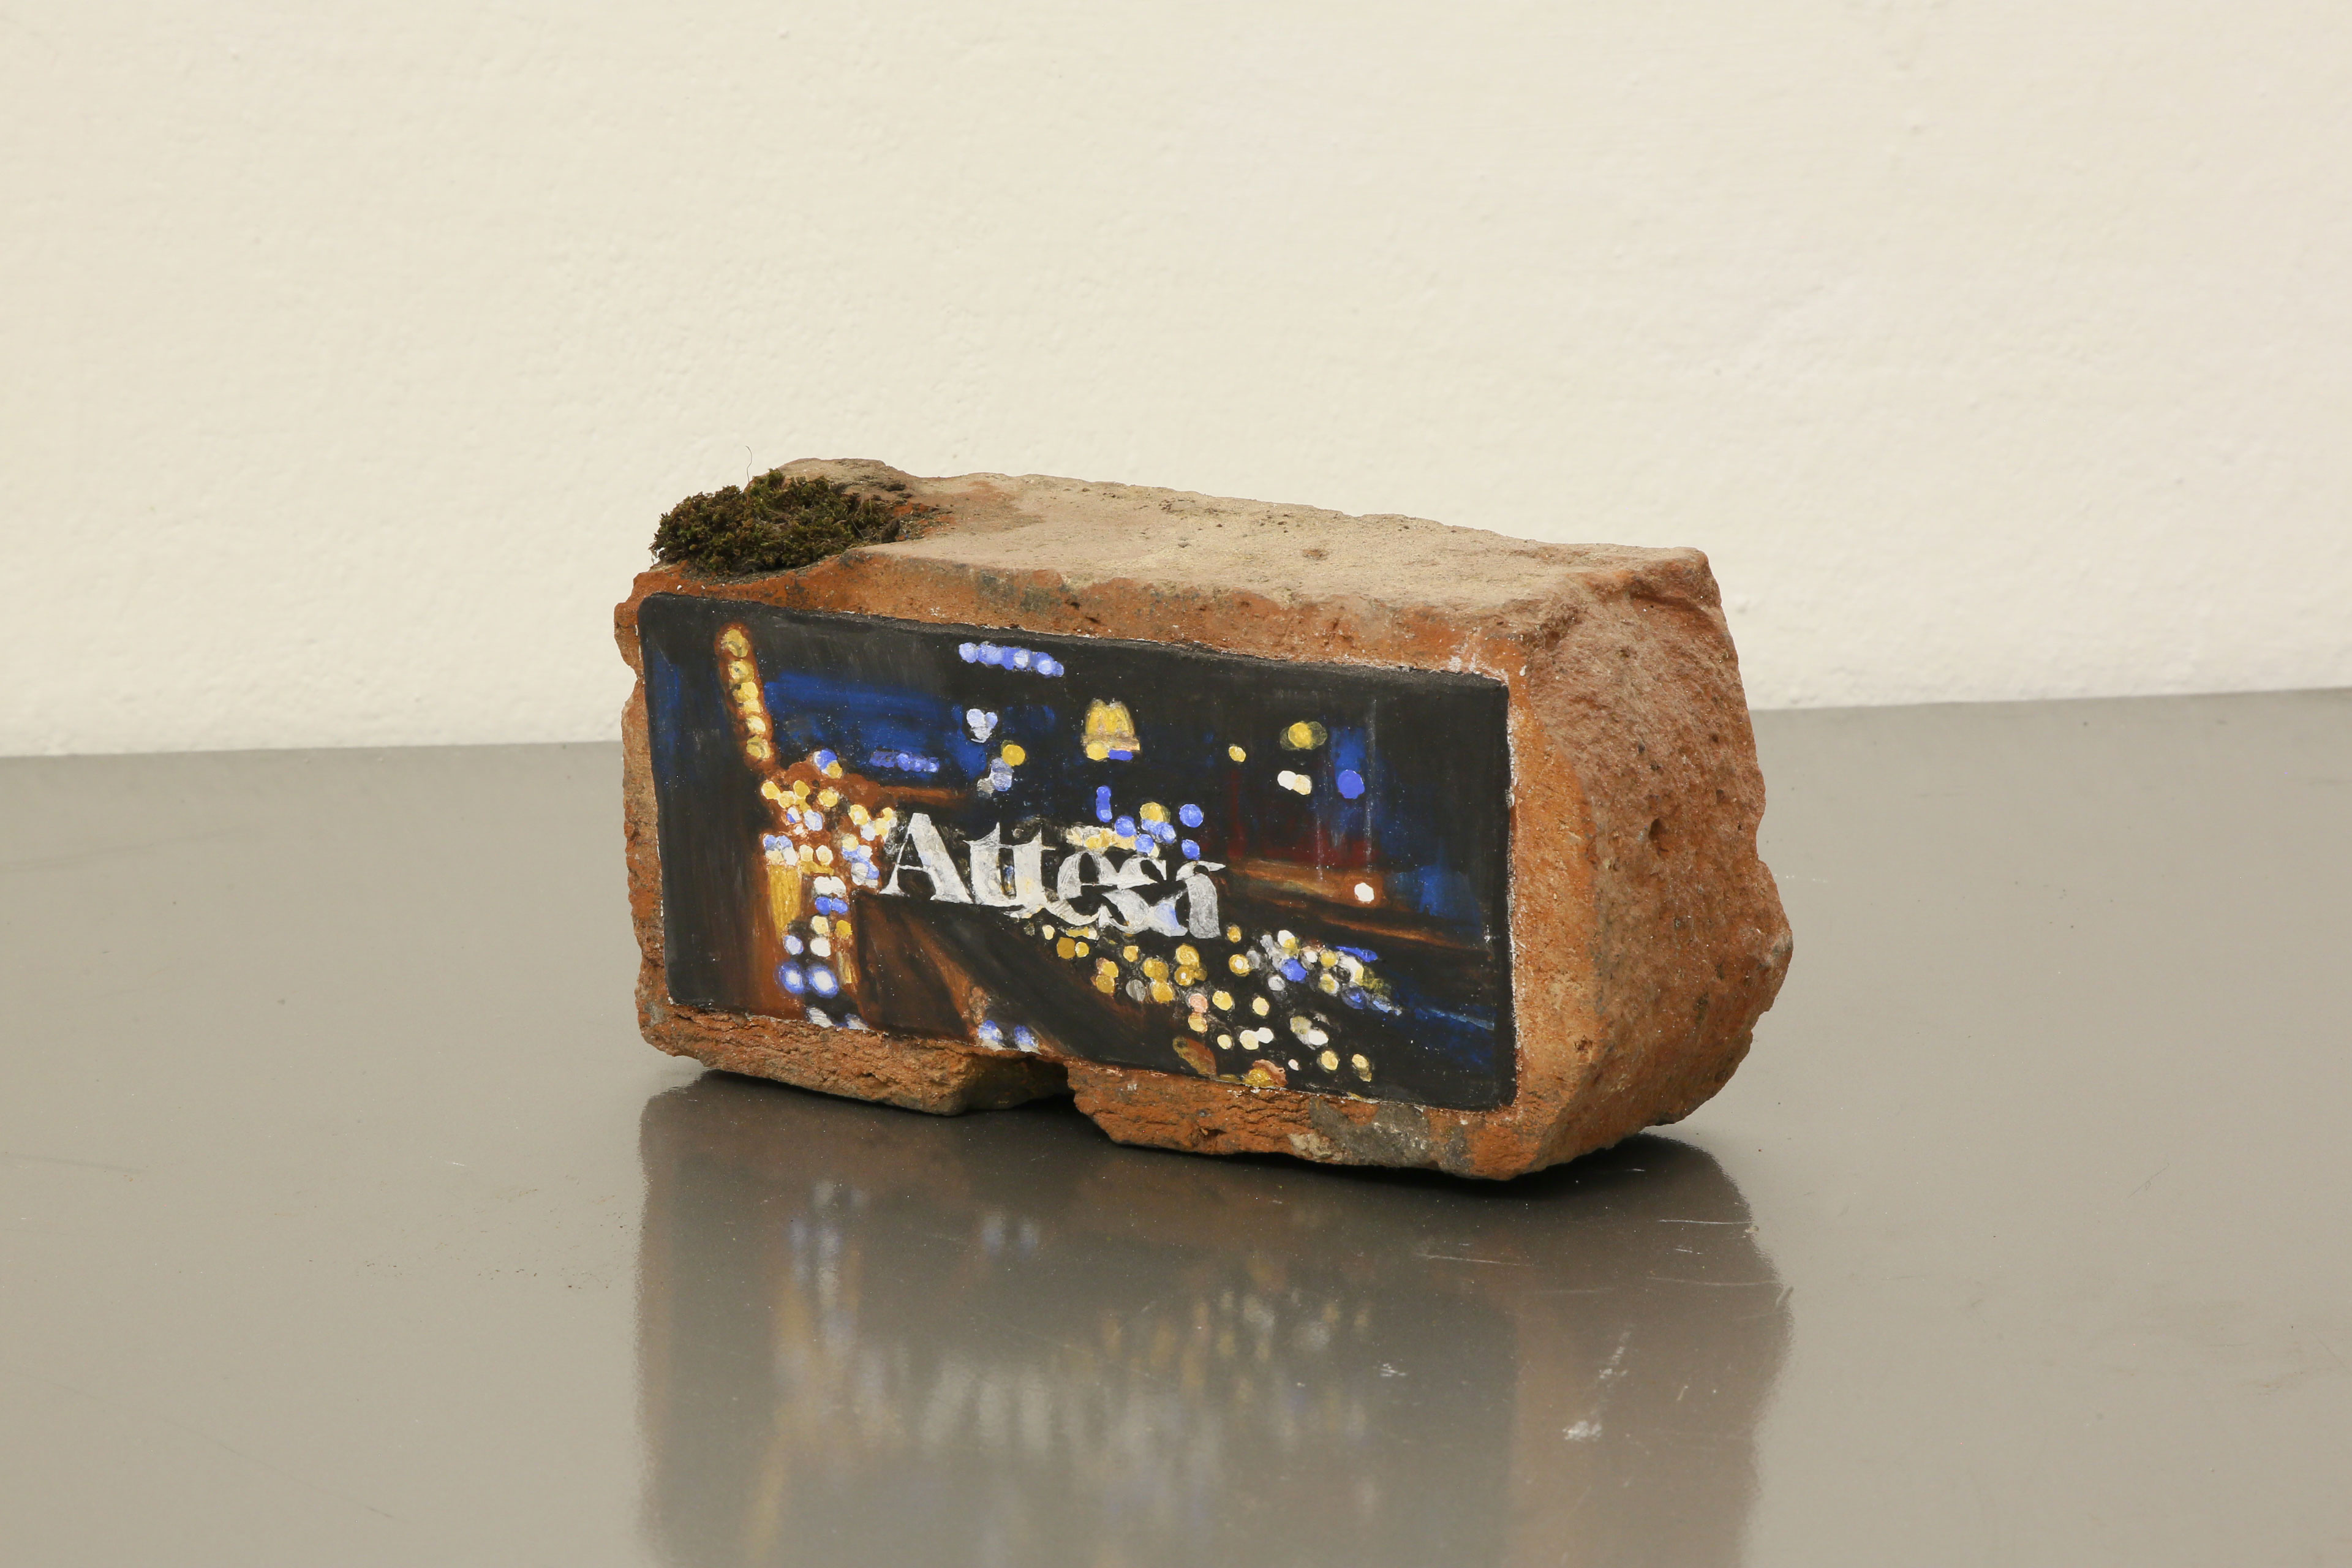 ''Attesa'' Affresco sur brique de terre cuite
22 x 11 x 7 cm 2019